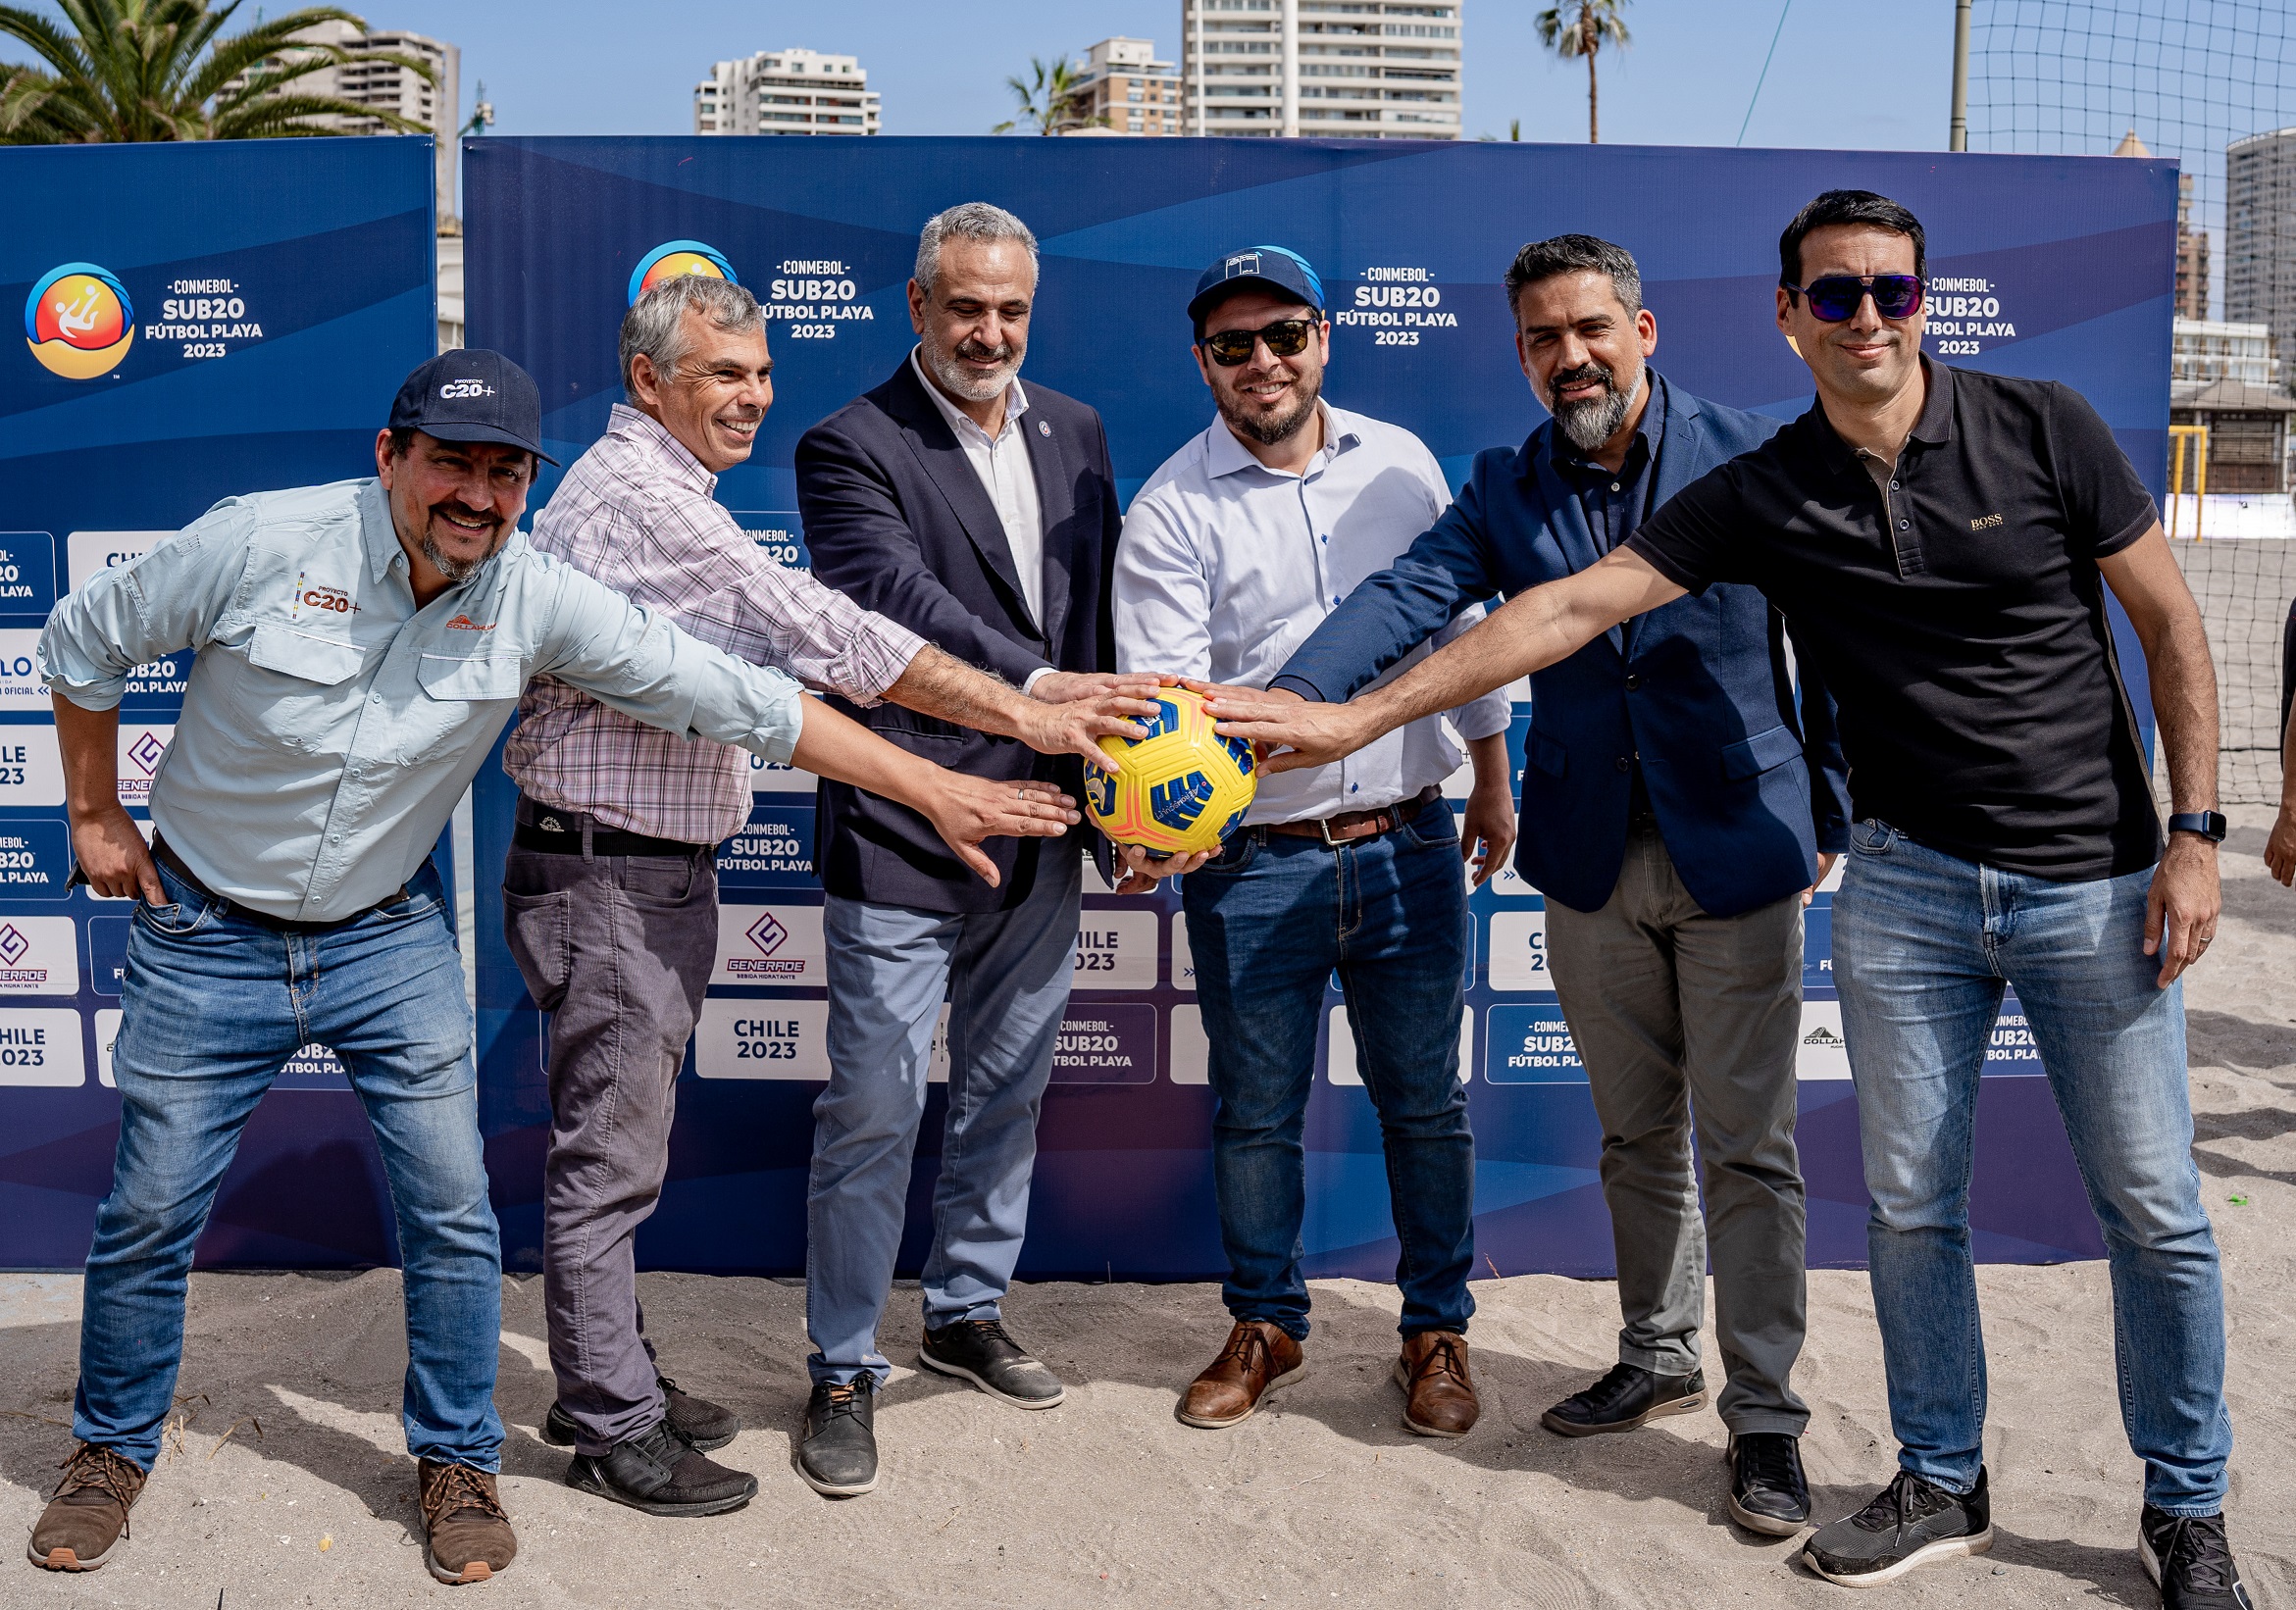 Todo listo para iniciar la fiesta del deporte Copa Conmebol Sub20 Fútbol Playa en Iquique